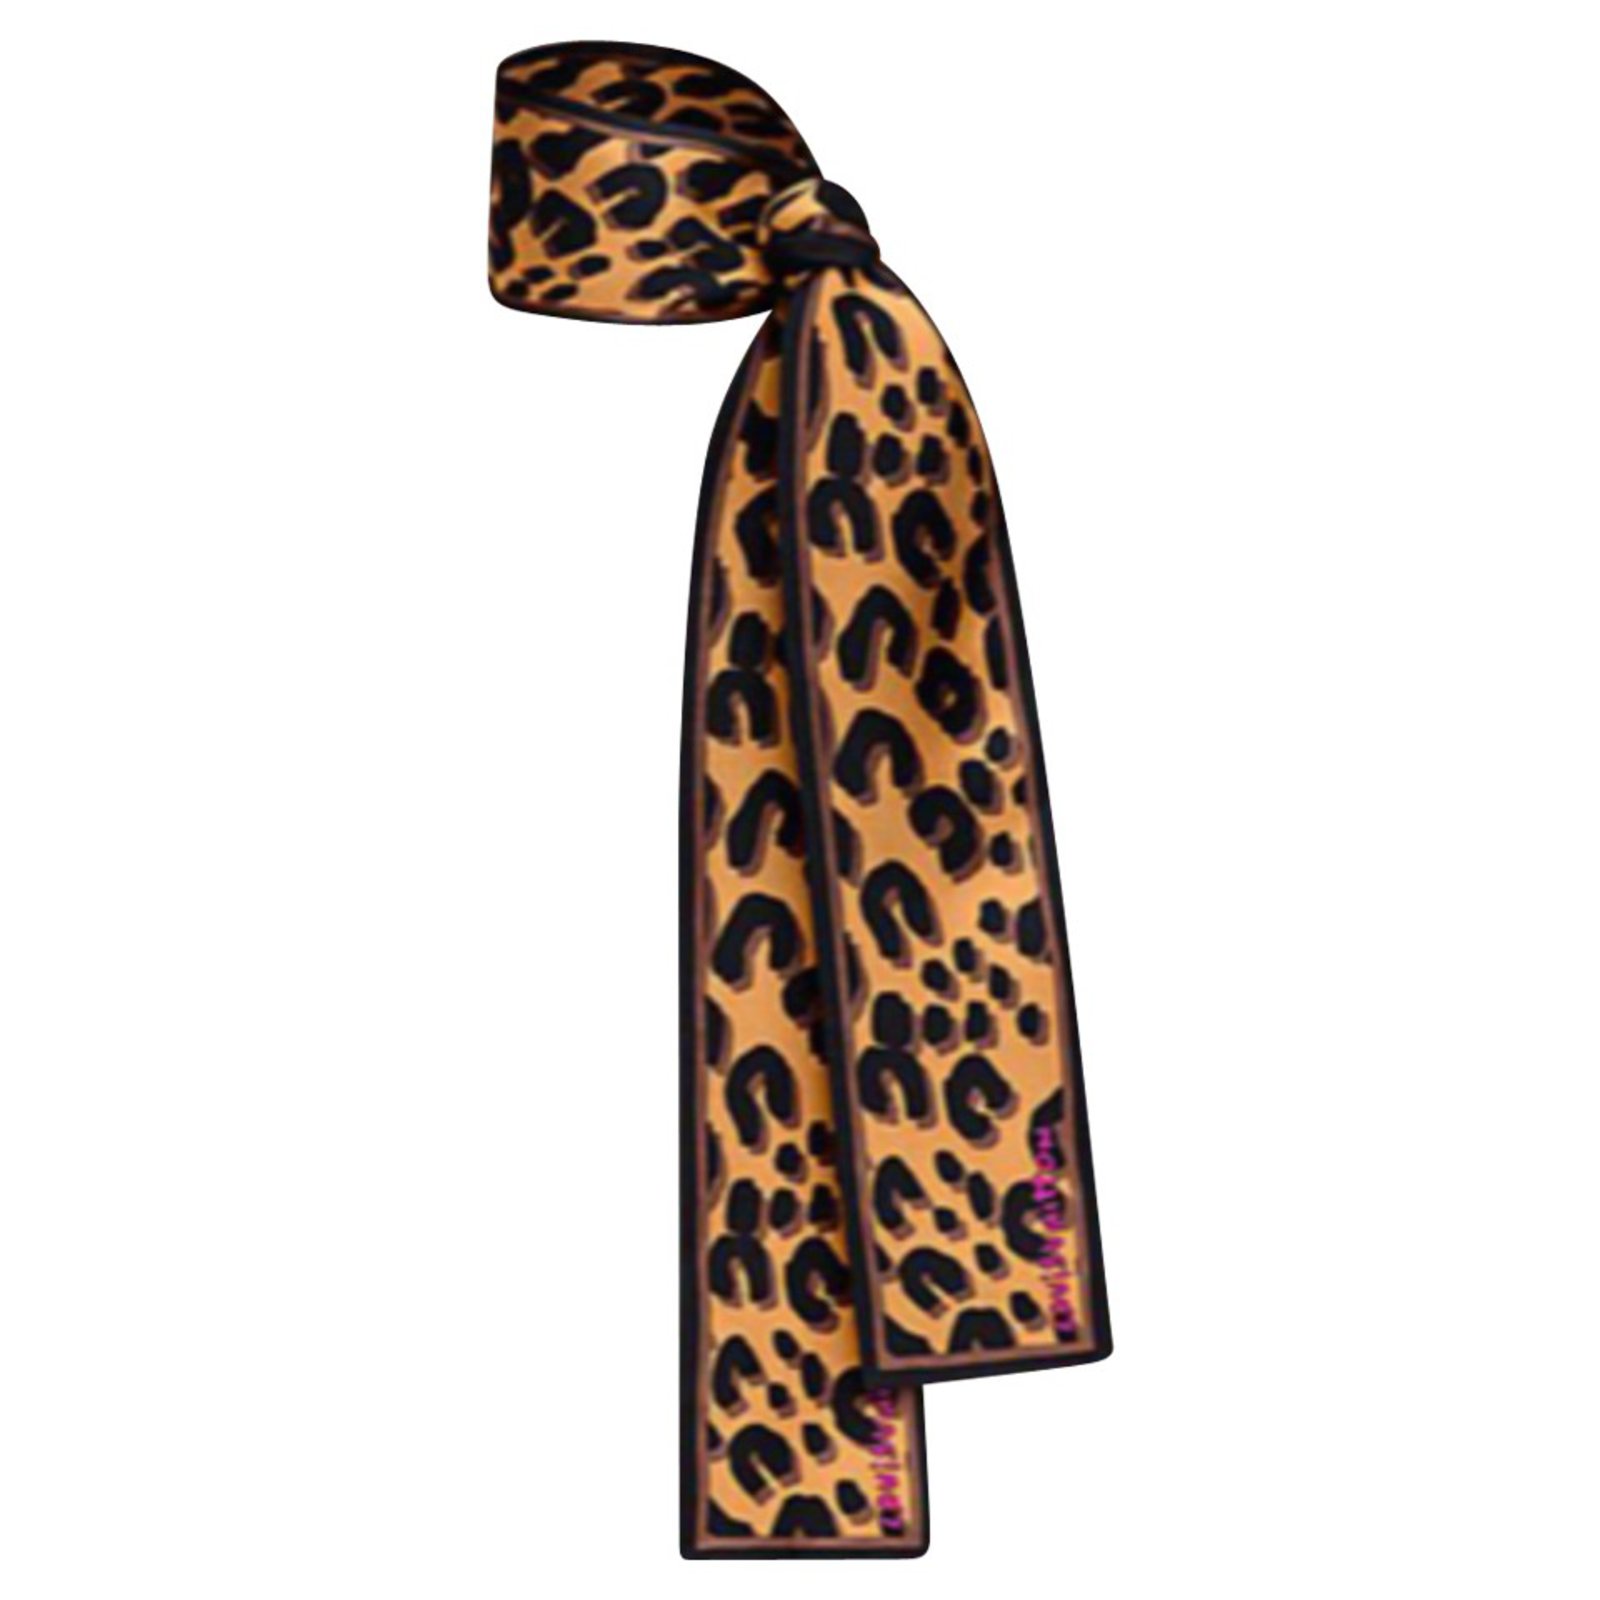 Louis Vuitton Cheetah Print Scarf